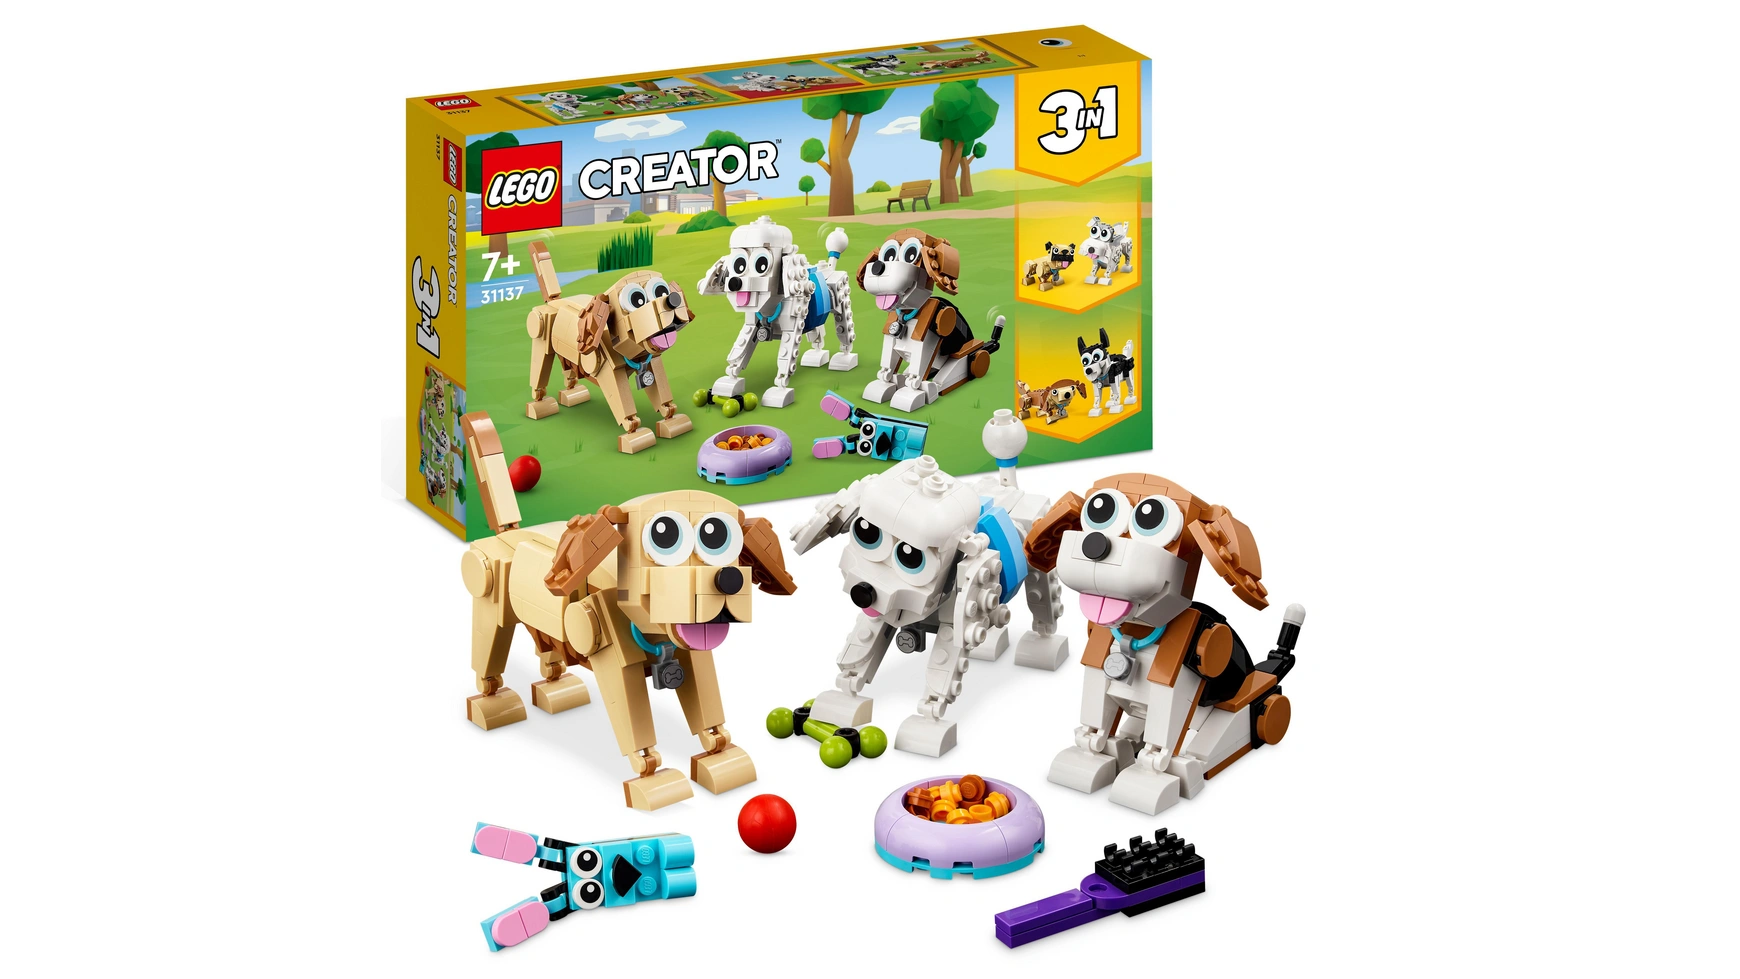 lego creator 3in1 набор игрушек с милыми собаками и животными Lego Creator 3in1 Набор игрушек с милыми собаками и животными